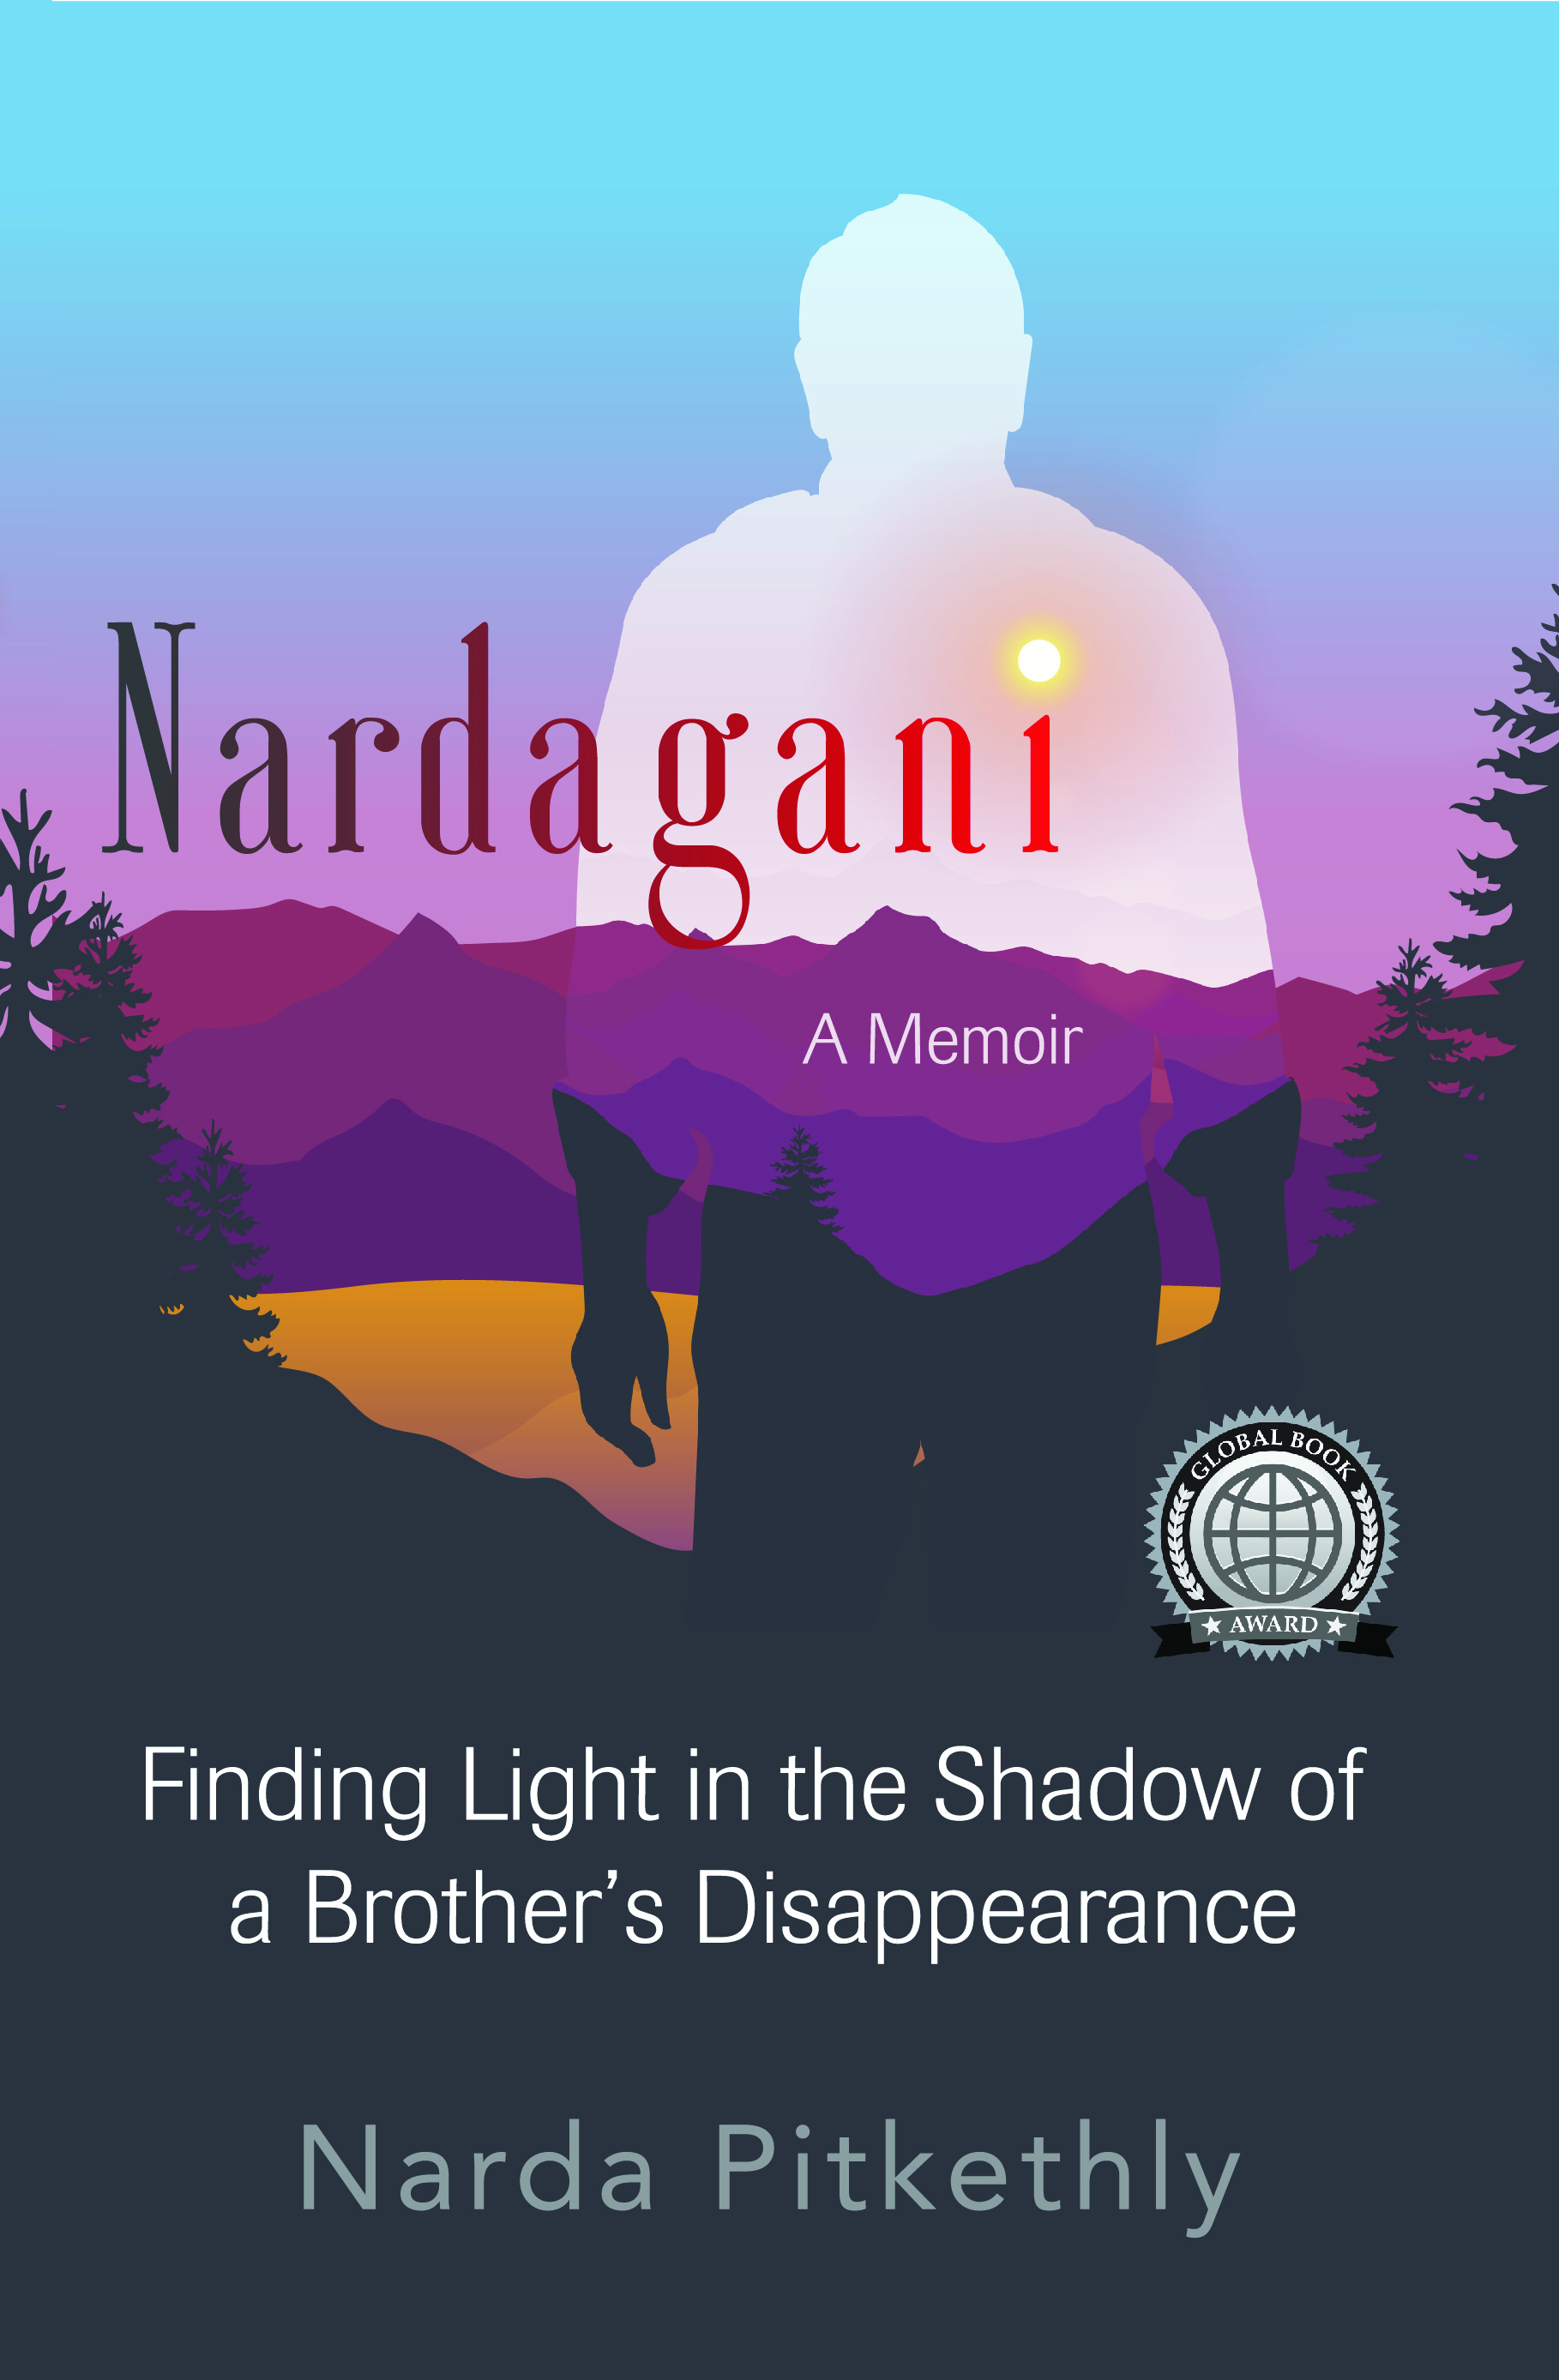 Nardagani books pdf free download lightshot download windows 10